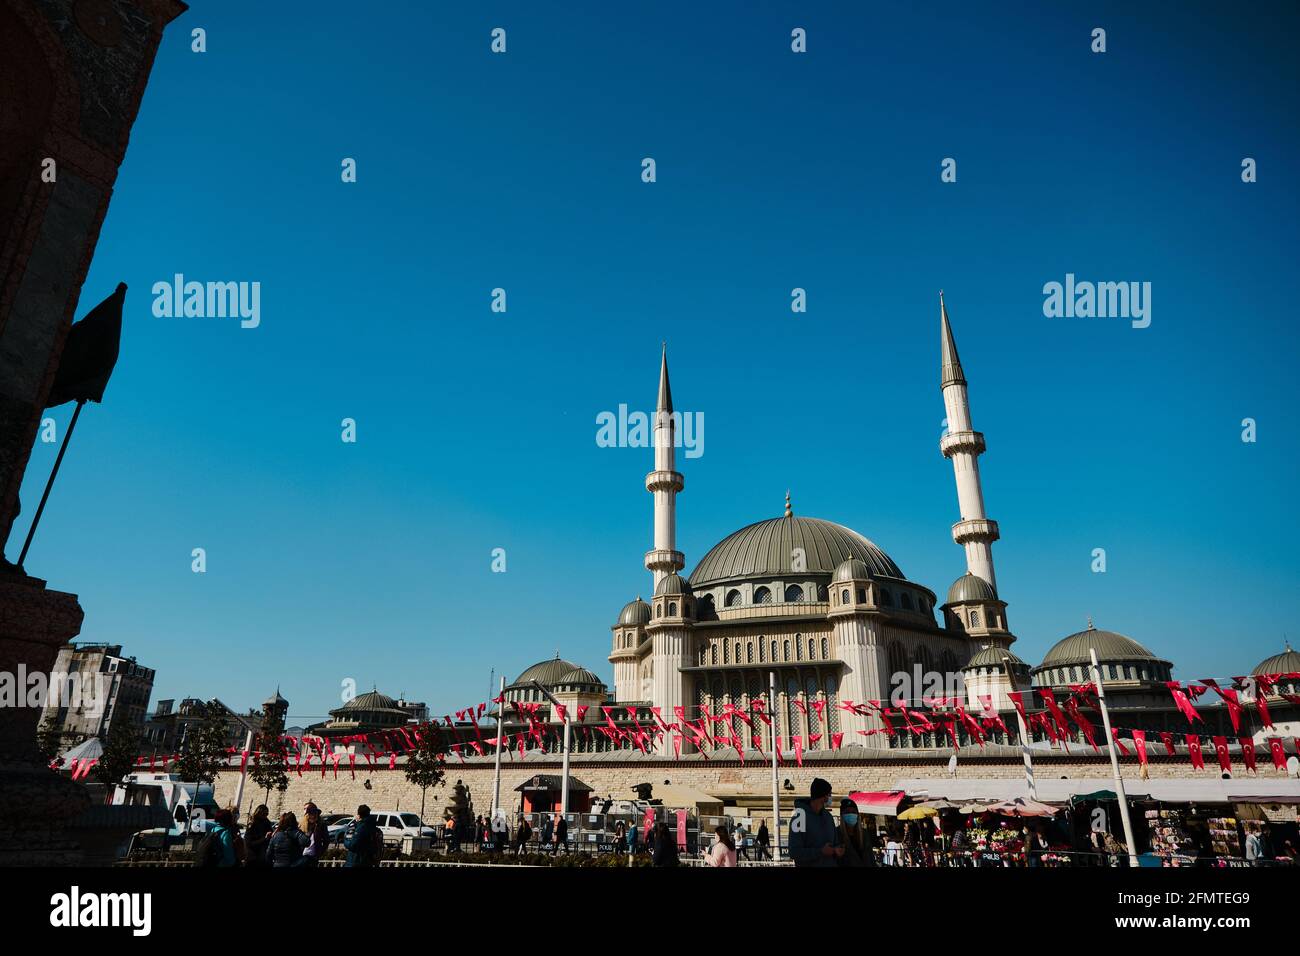 La più famosa piazza taksim durante la mattina con i dettagli di taksim, recentemente costruito moschea taksim e molte bandiere turche, polizia e turisti Foto Stock